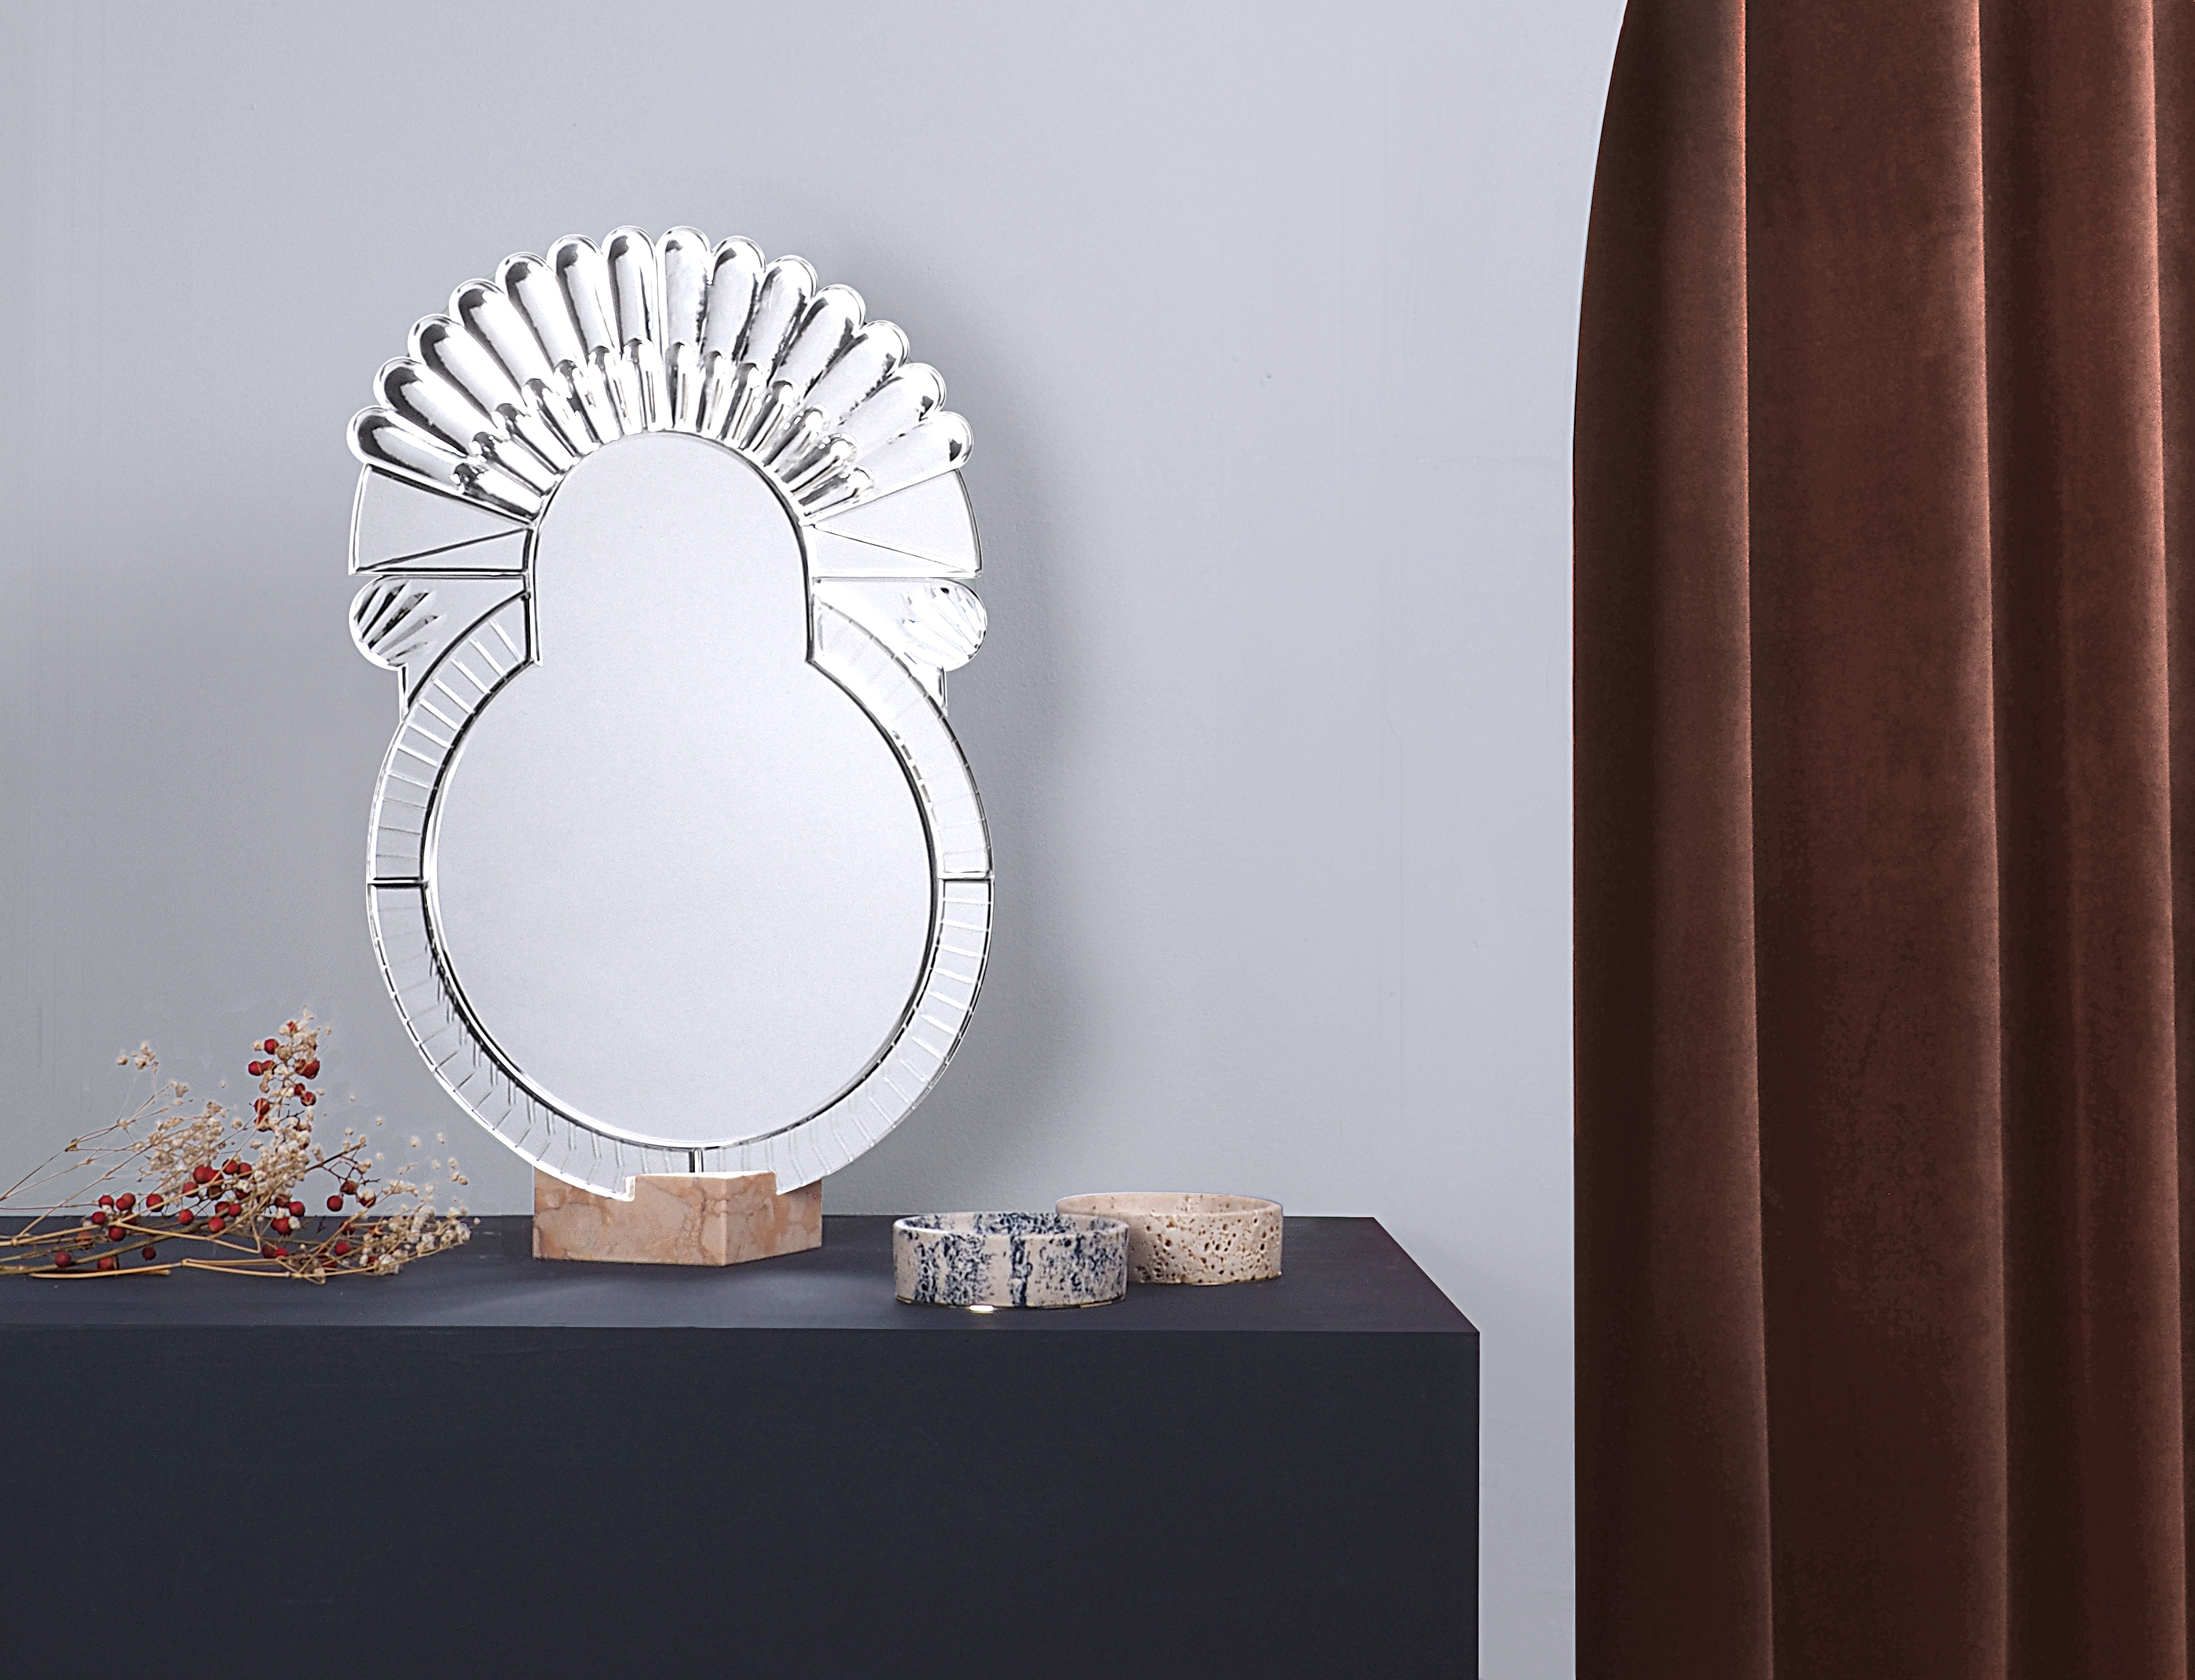 The Elemento solid glass mirror follows on from Nikolai's Scena collection. Photo c/o Nikolai Kotlarczyk.